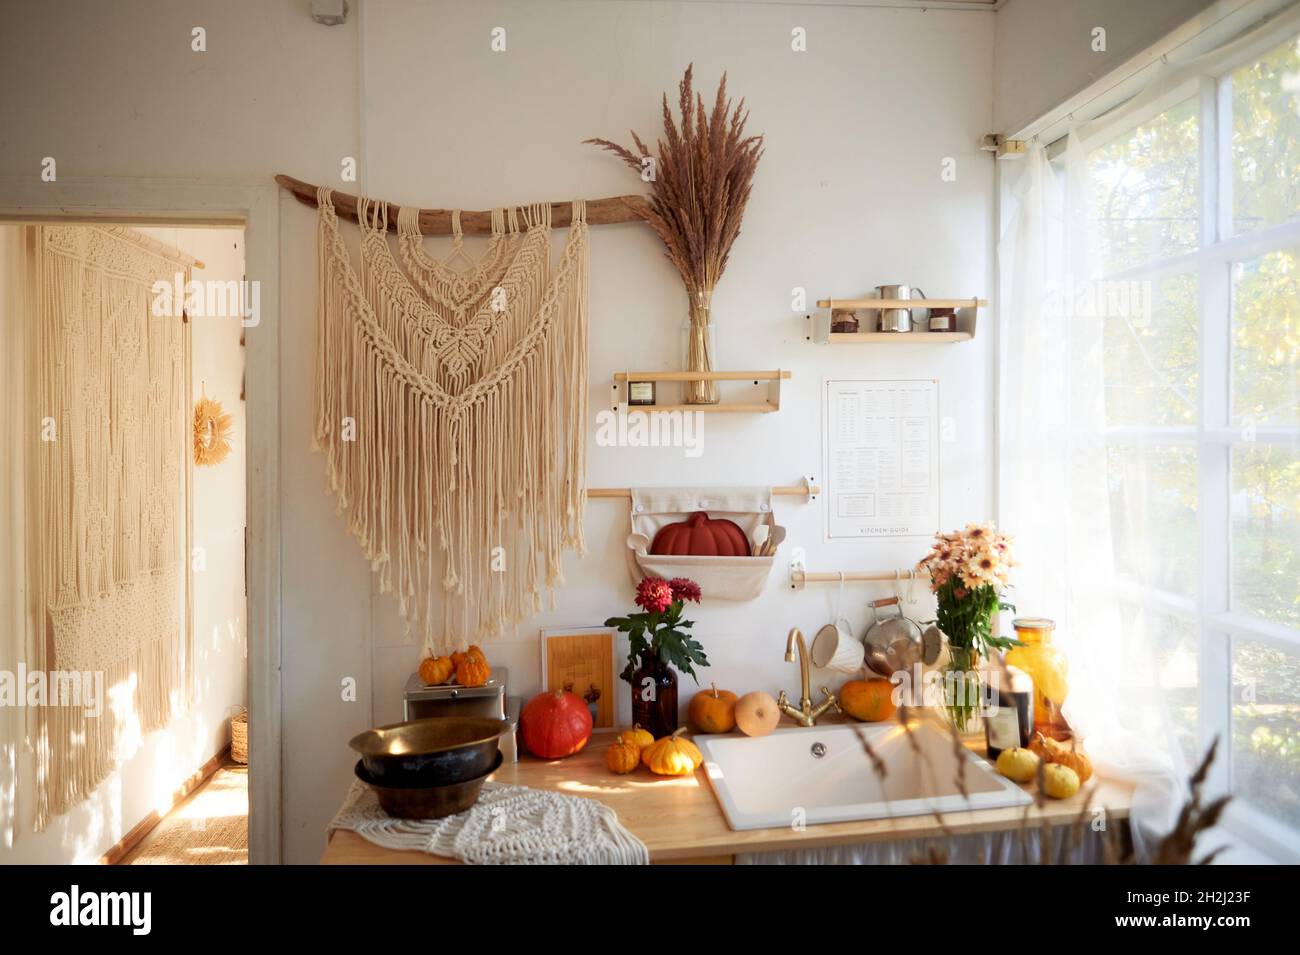 Gemütliche rustikale Küche mit großem Fenster und Spitzenvorhängen. An der Wand hängt ein großes Makrame, Kürbisse, Getreide Stockfoto